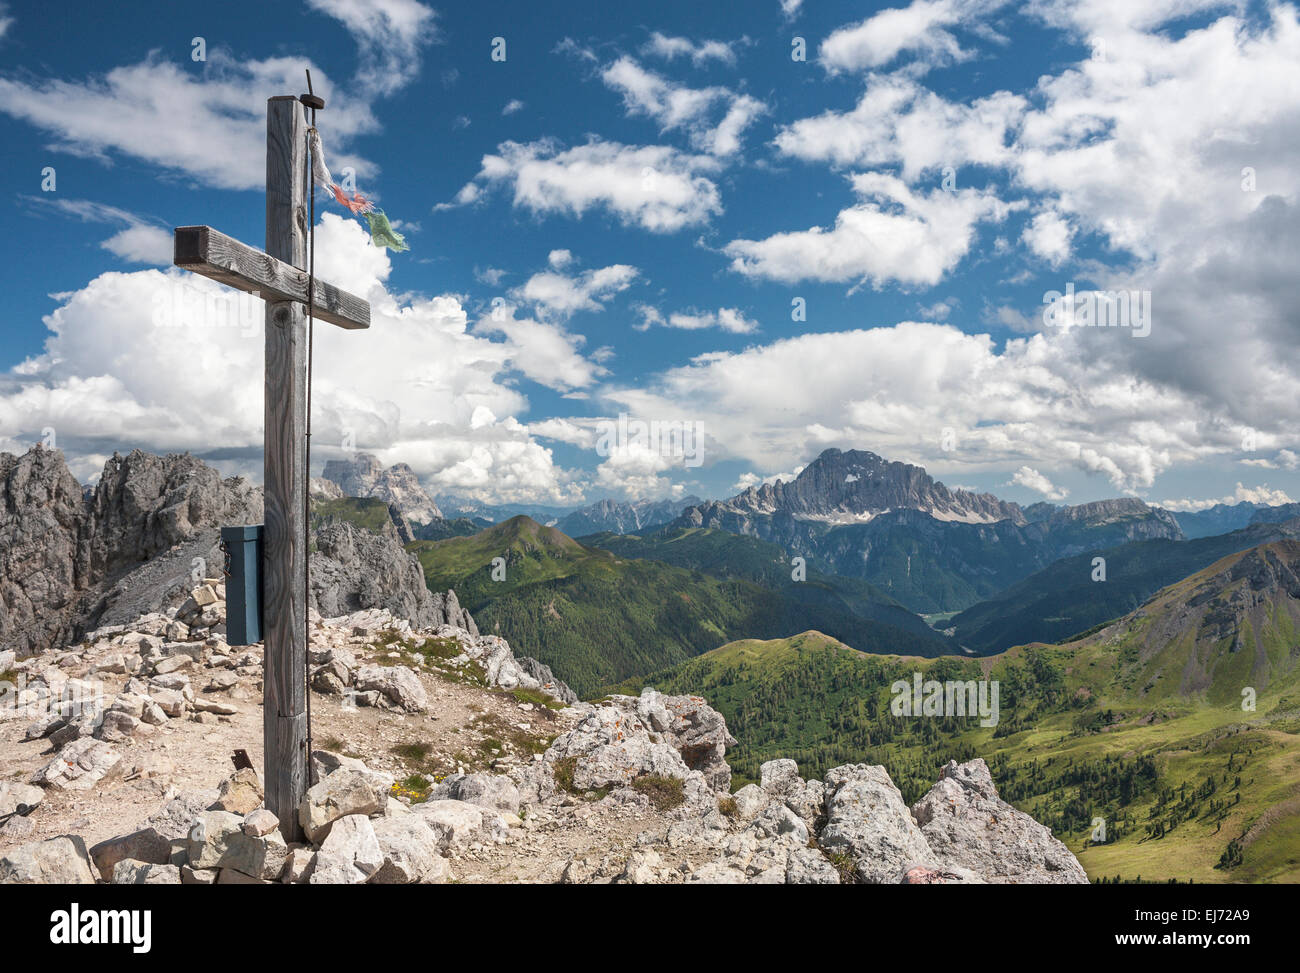 Vertice di croce di Mt Settsass, 2,571 m, Monte Civetta, 3220 m, sul retro, Cortina d'Ampezzo, Veneto, Dolomiti, Italia Foto Stock